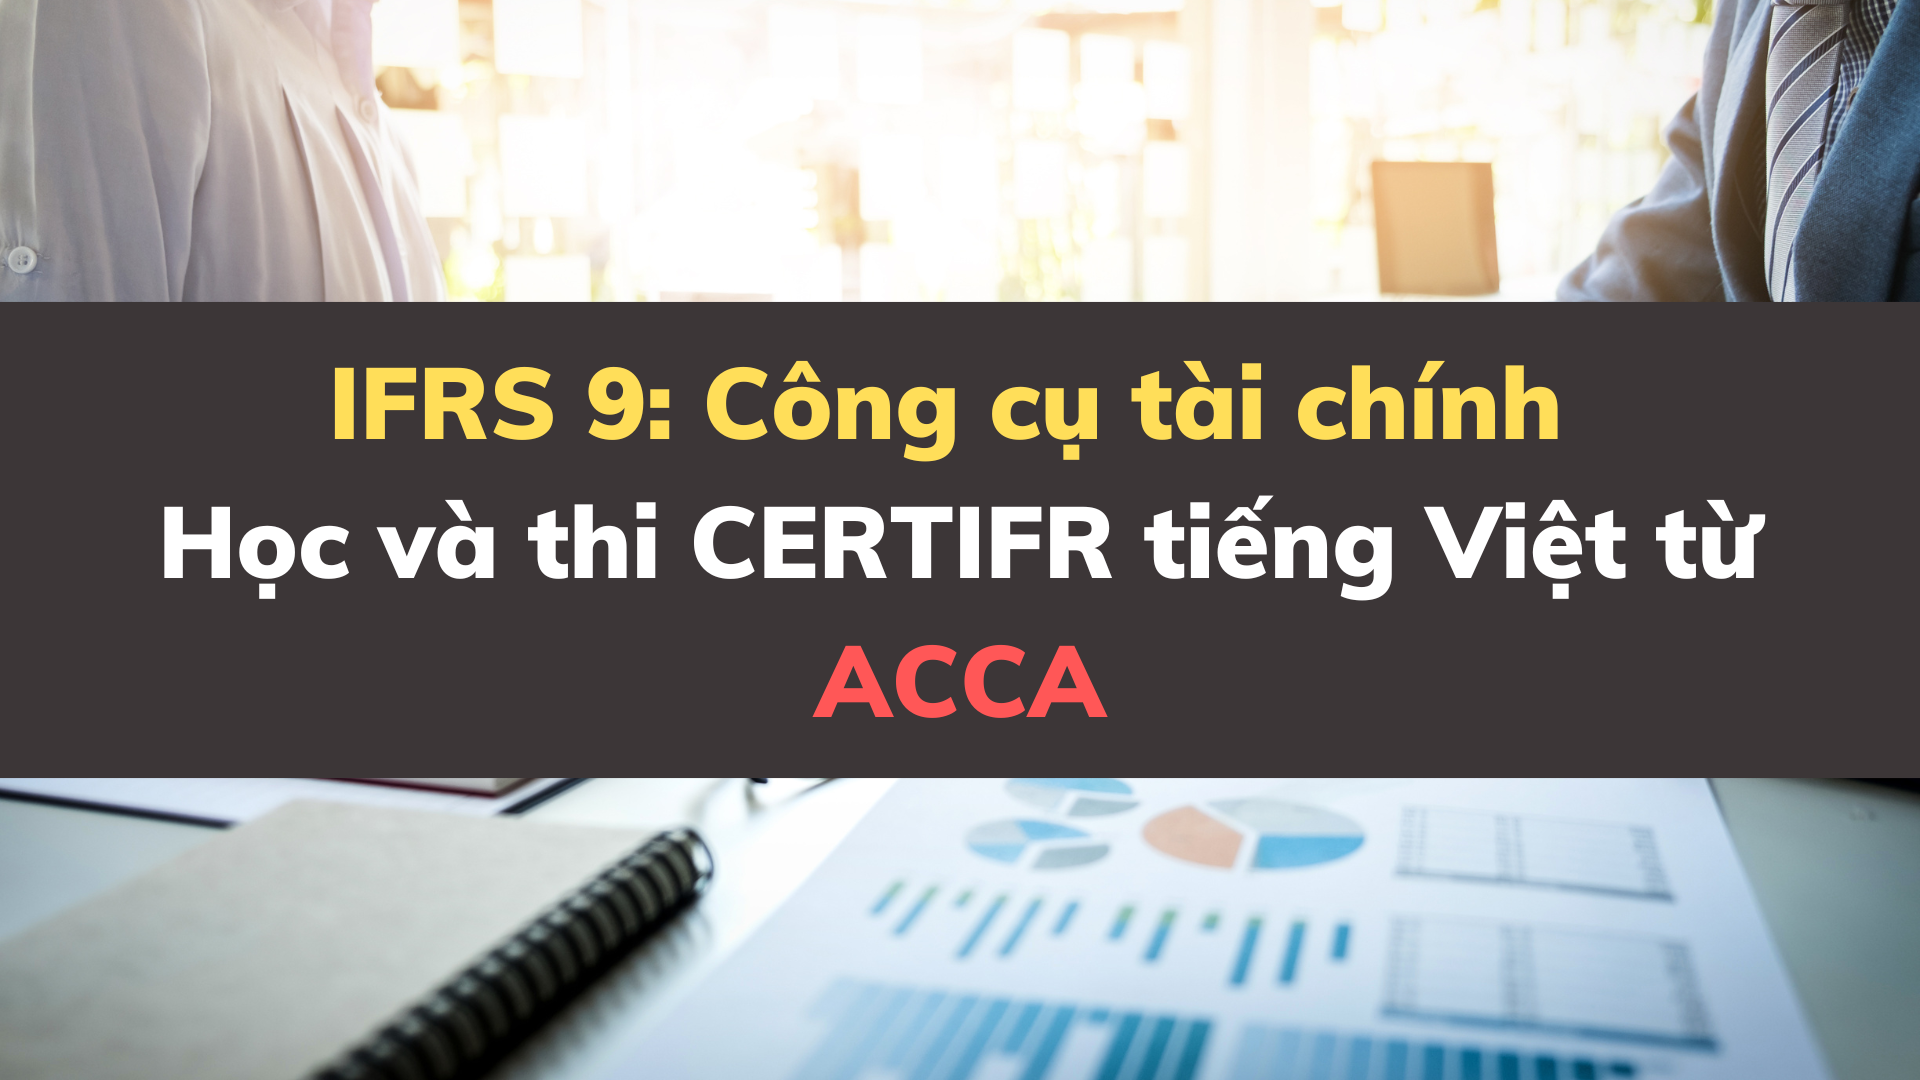 IFRS 9 - Công cụ tài chính - Học và thi CERTIFR tiếng Việt từ ACCA